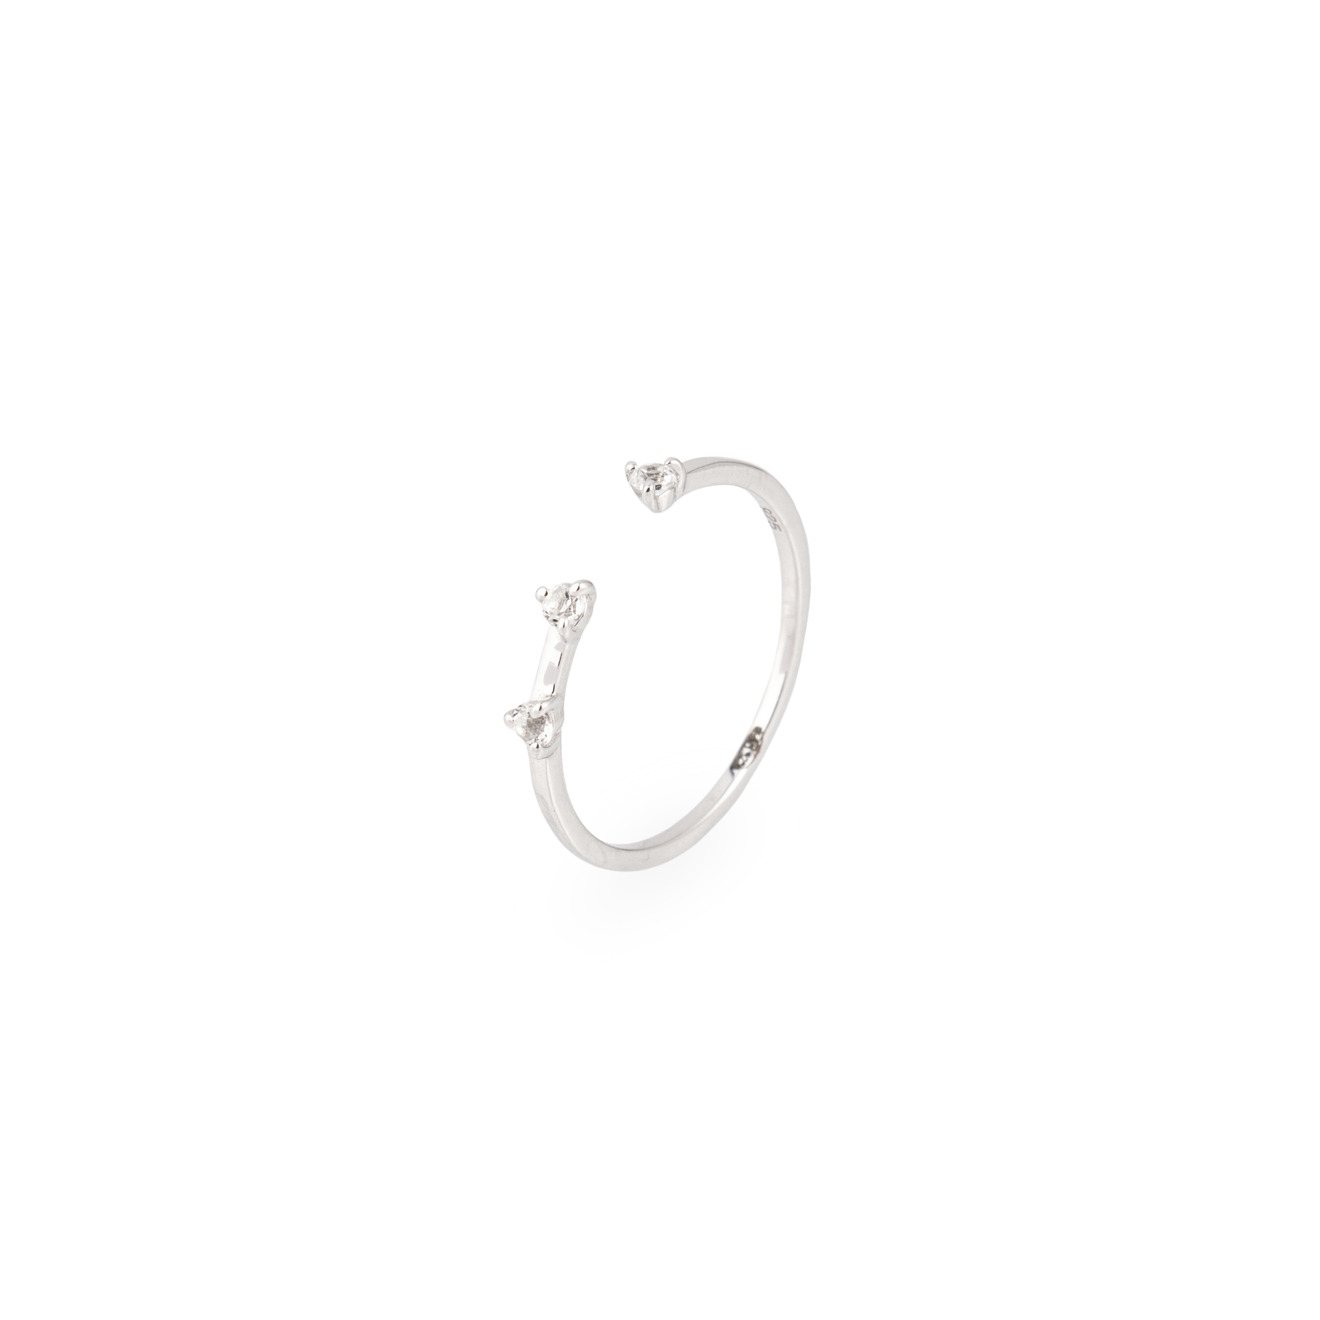 Wisteria Gems Открытое серебряное кольцо с маленькими вставками топаза